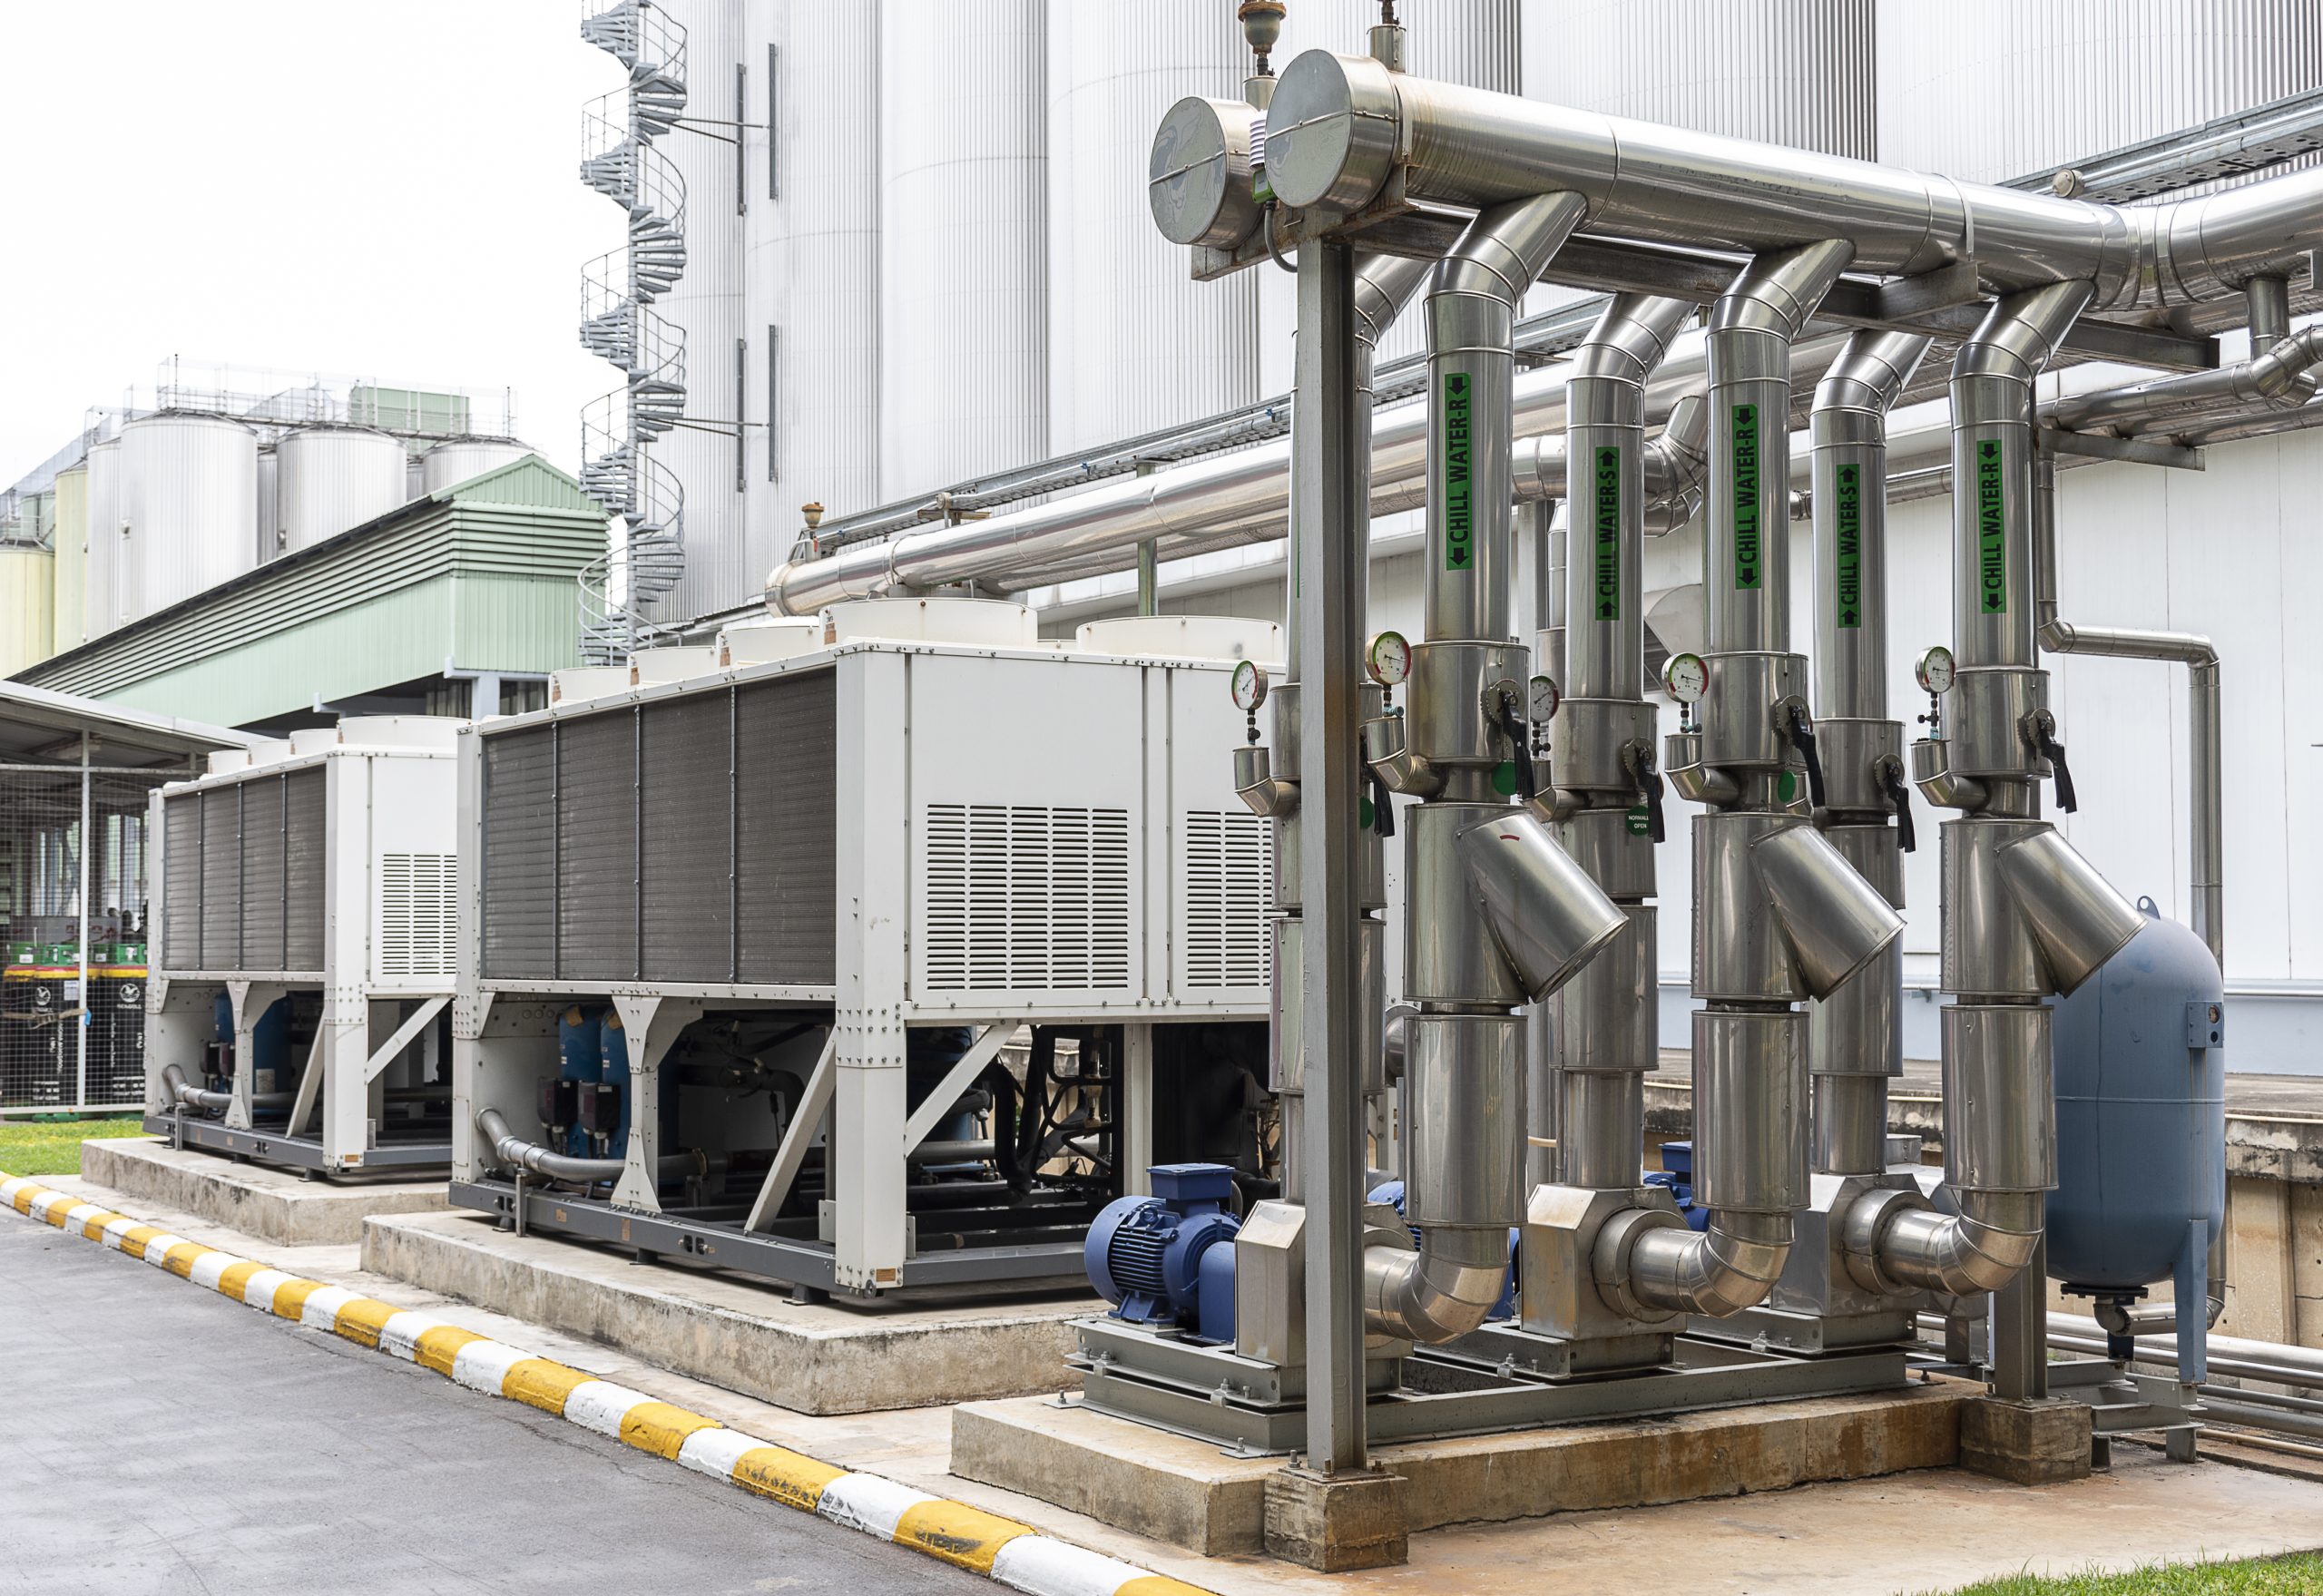 Système de canalisation pour acheminer de l'eau froide dans le processus de production.